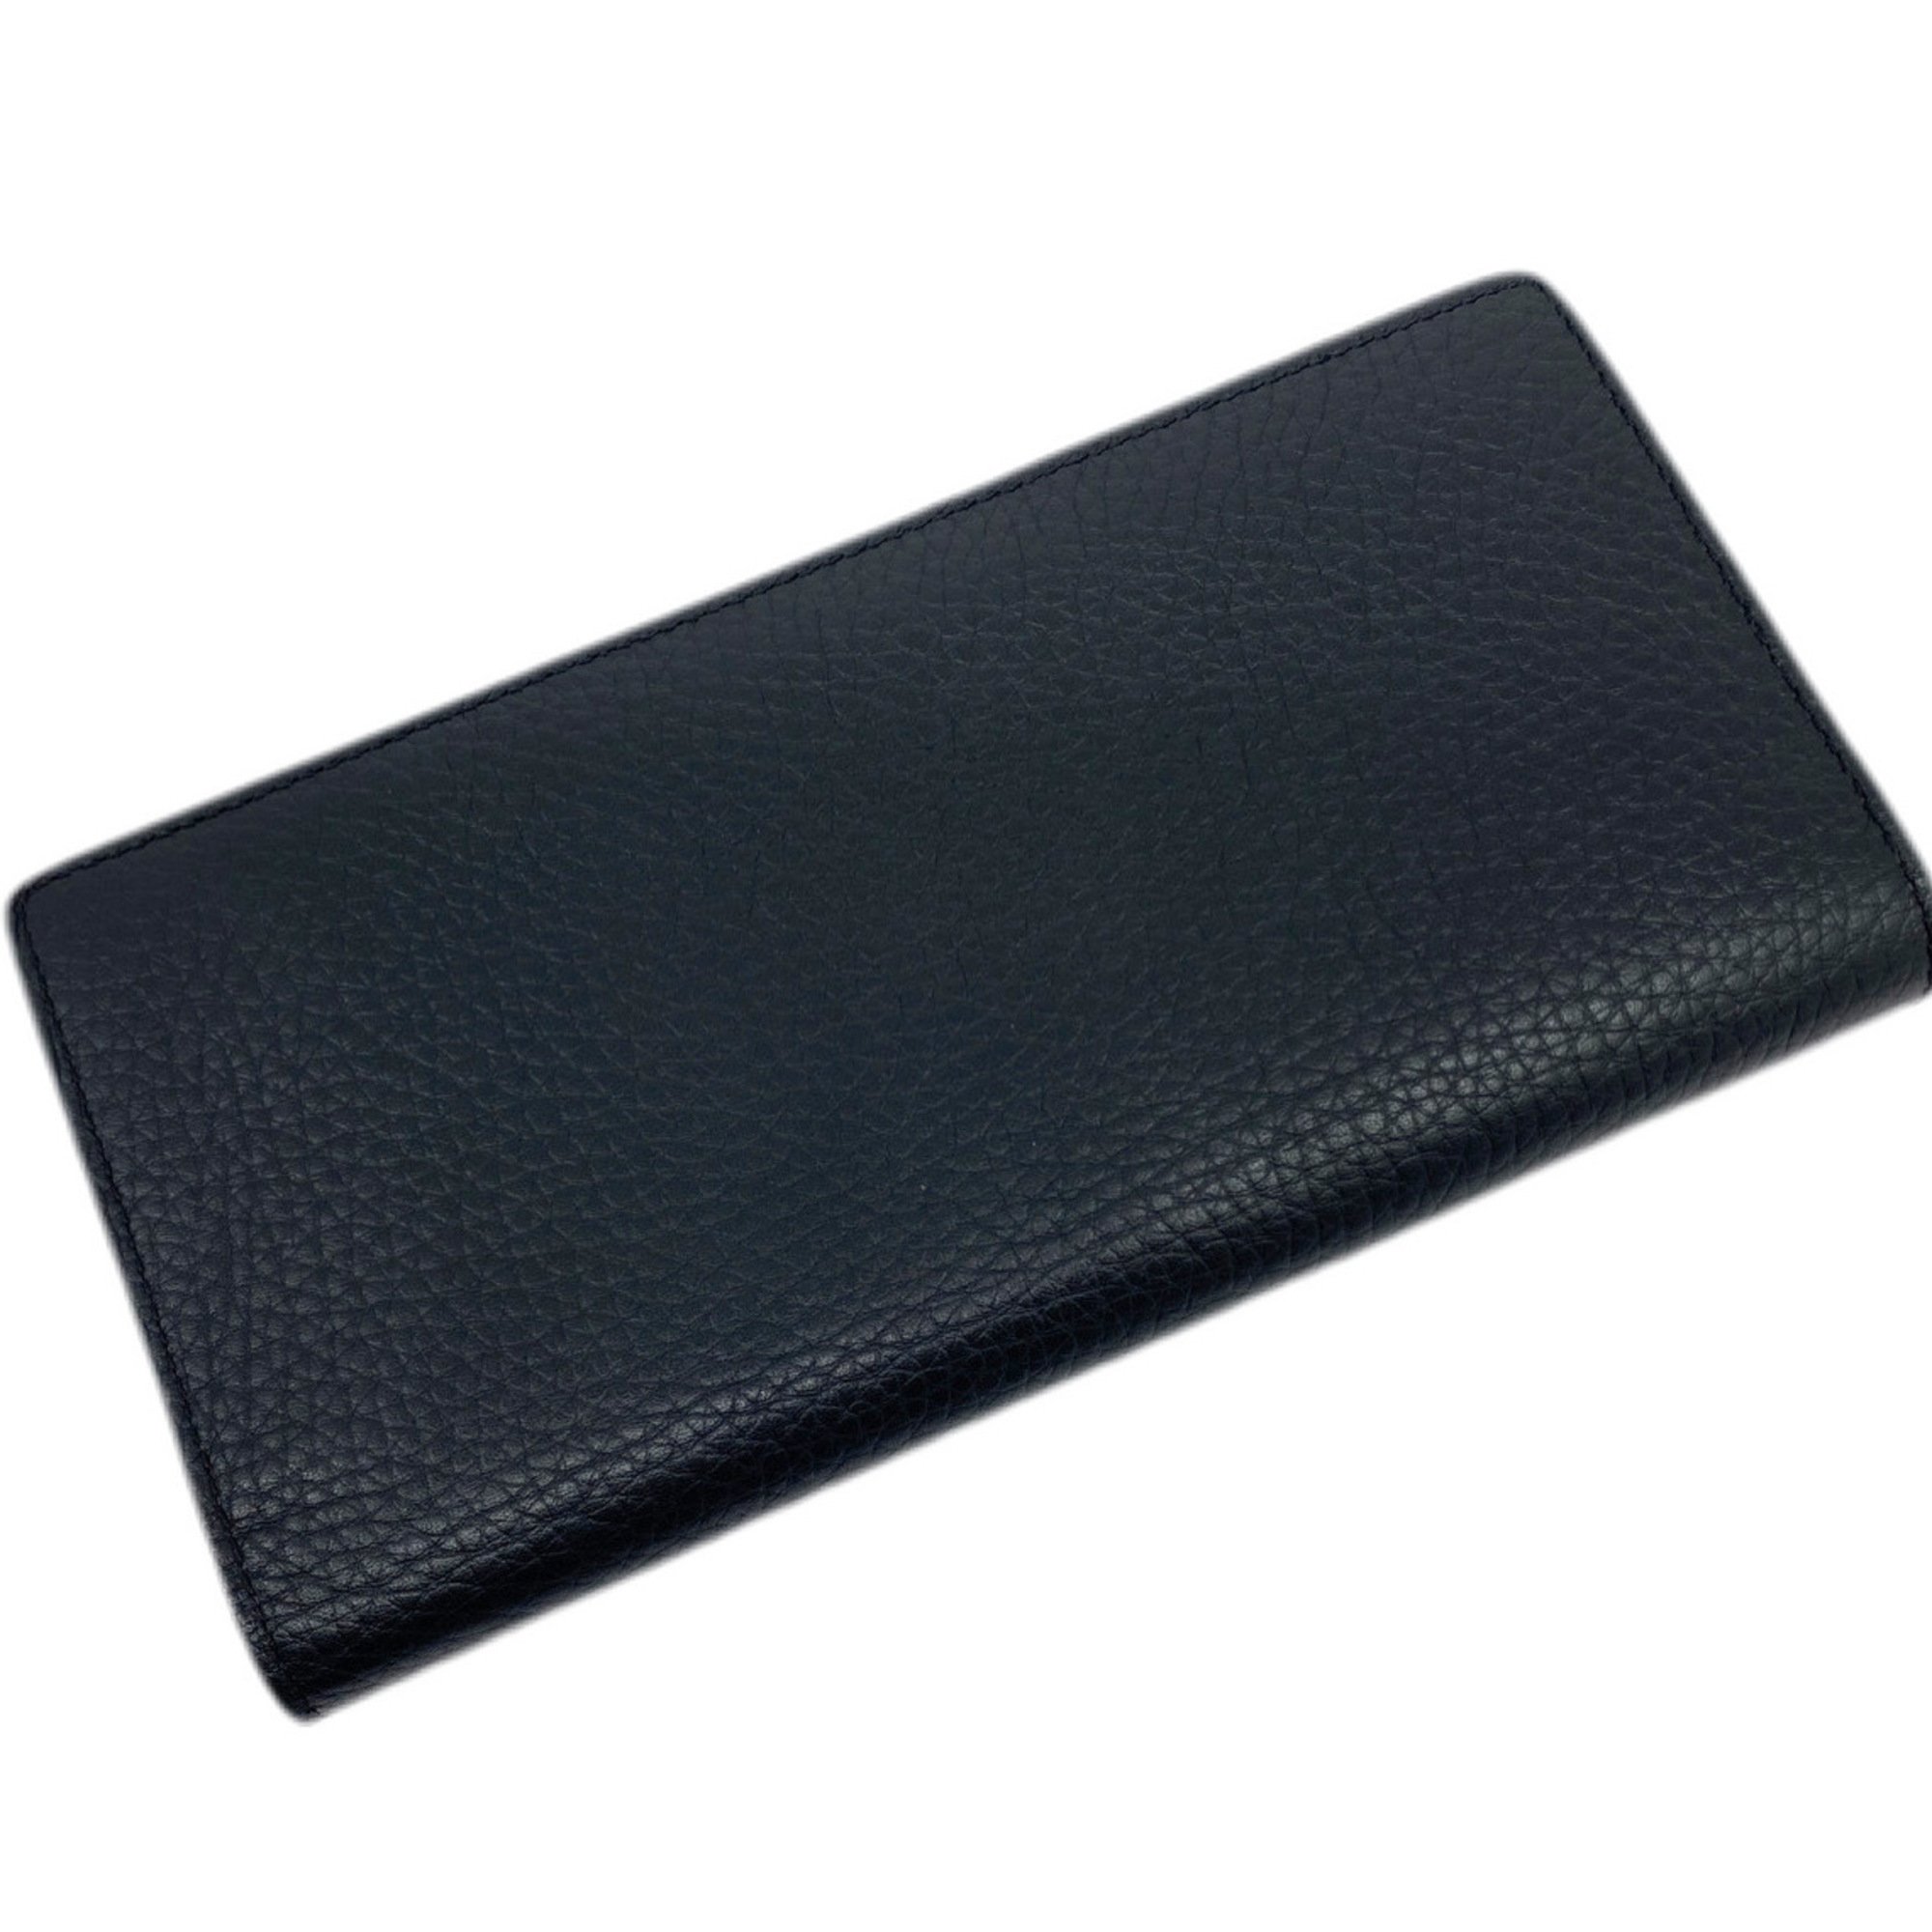 LOUIS VUITTON Louis Vuitton Portefeuille Brazza Long Wallet Aerogram Leather Black M69980 Coin Purse Included Men's Women's